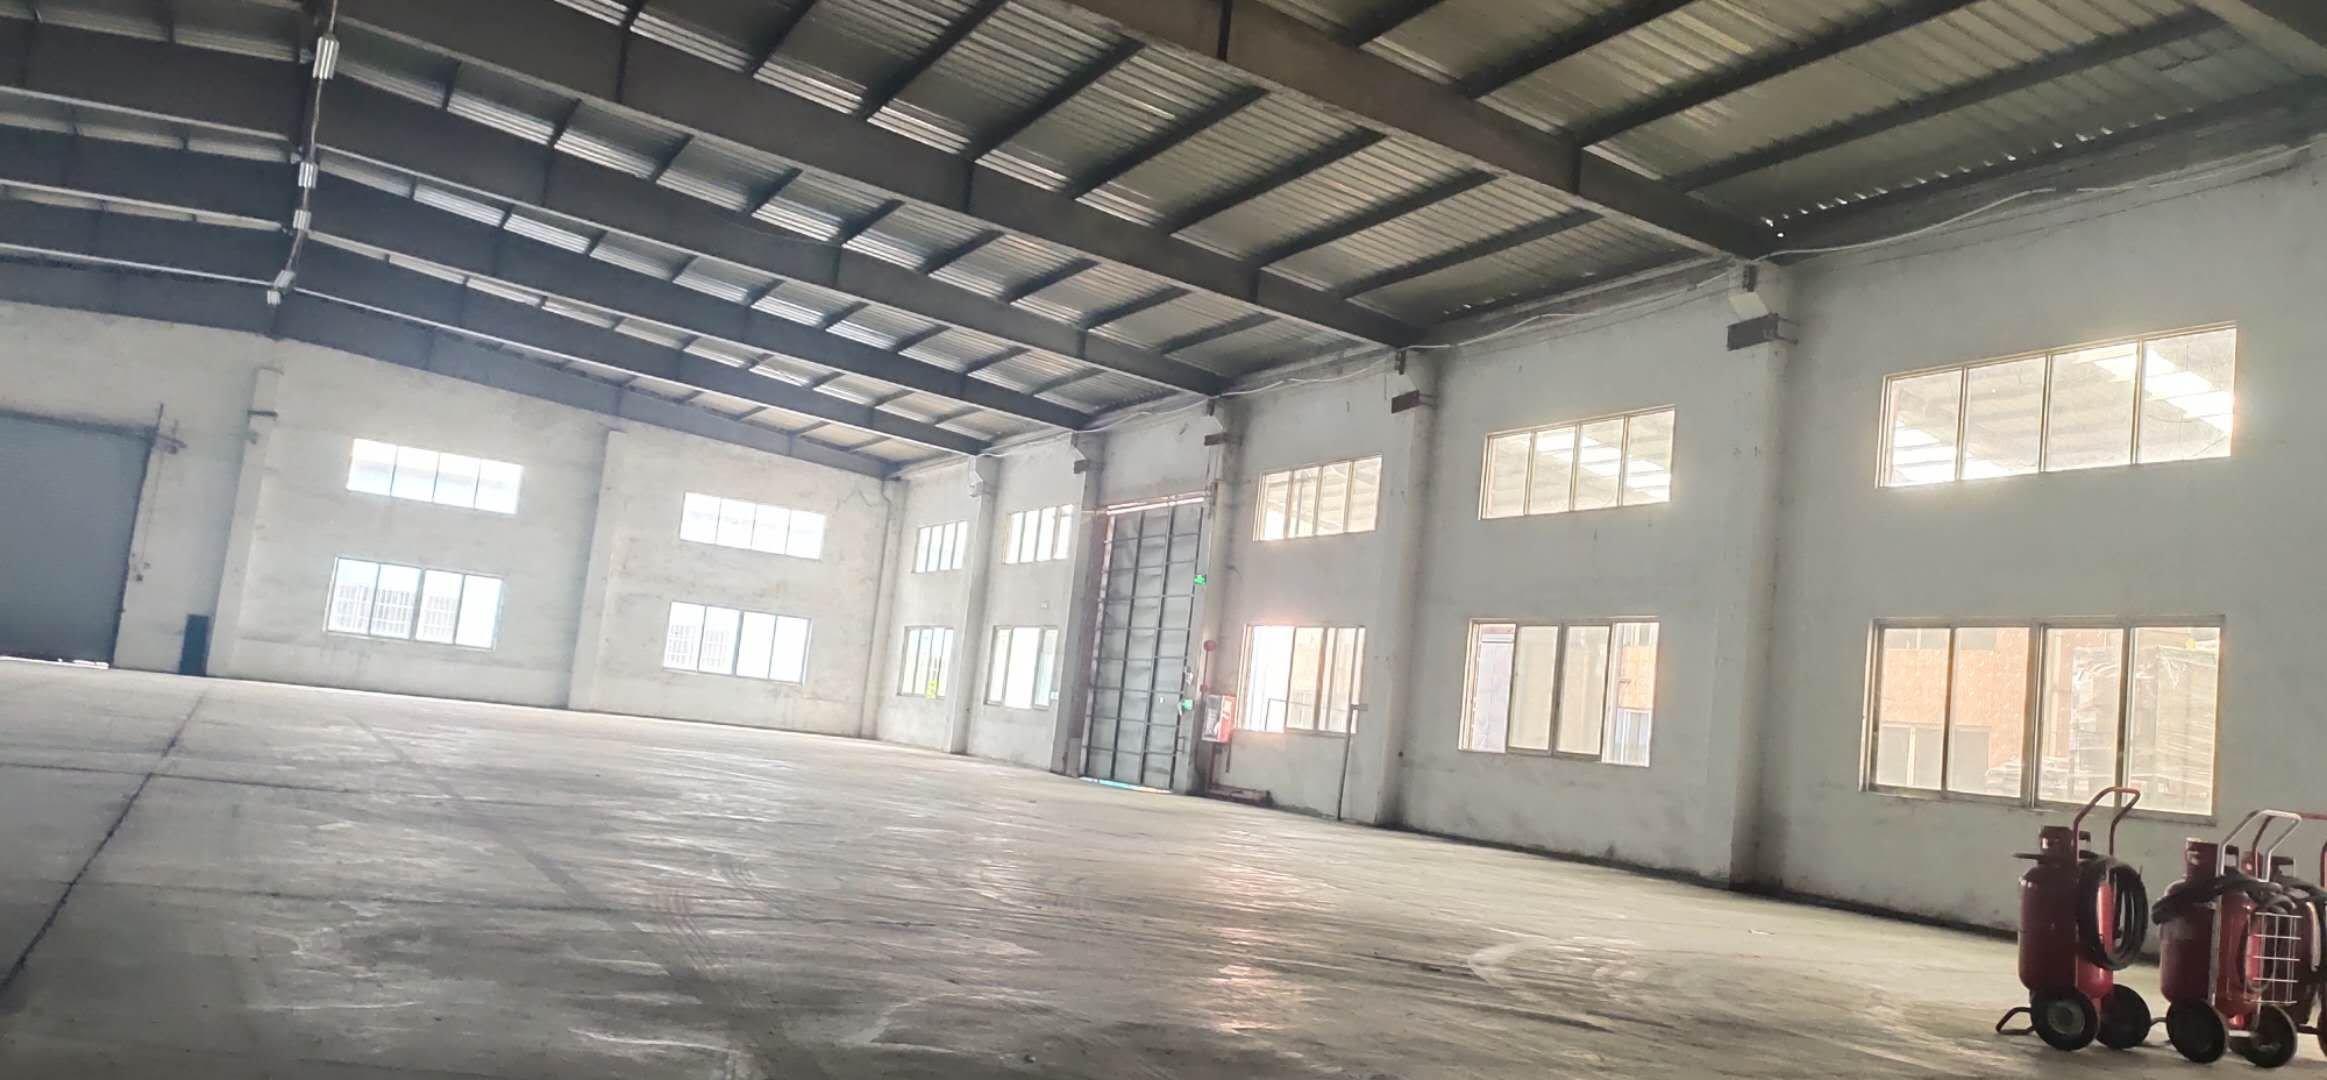 太和新出工业园区单一层钢结构滴水九米厂房仓库出租。